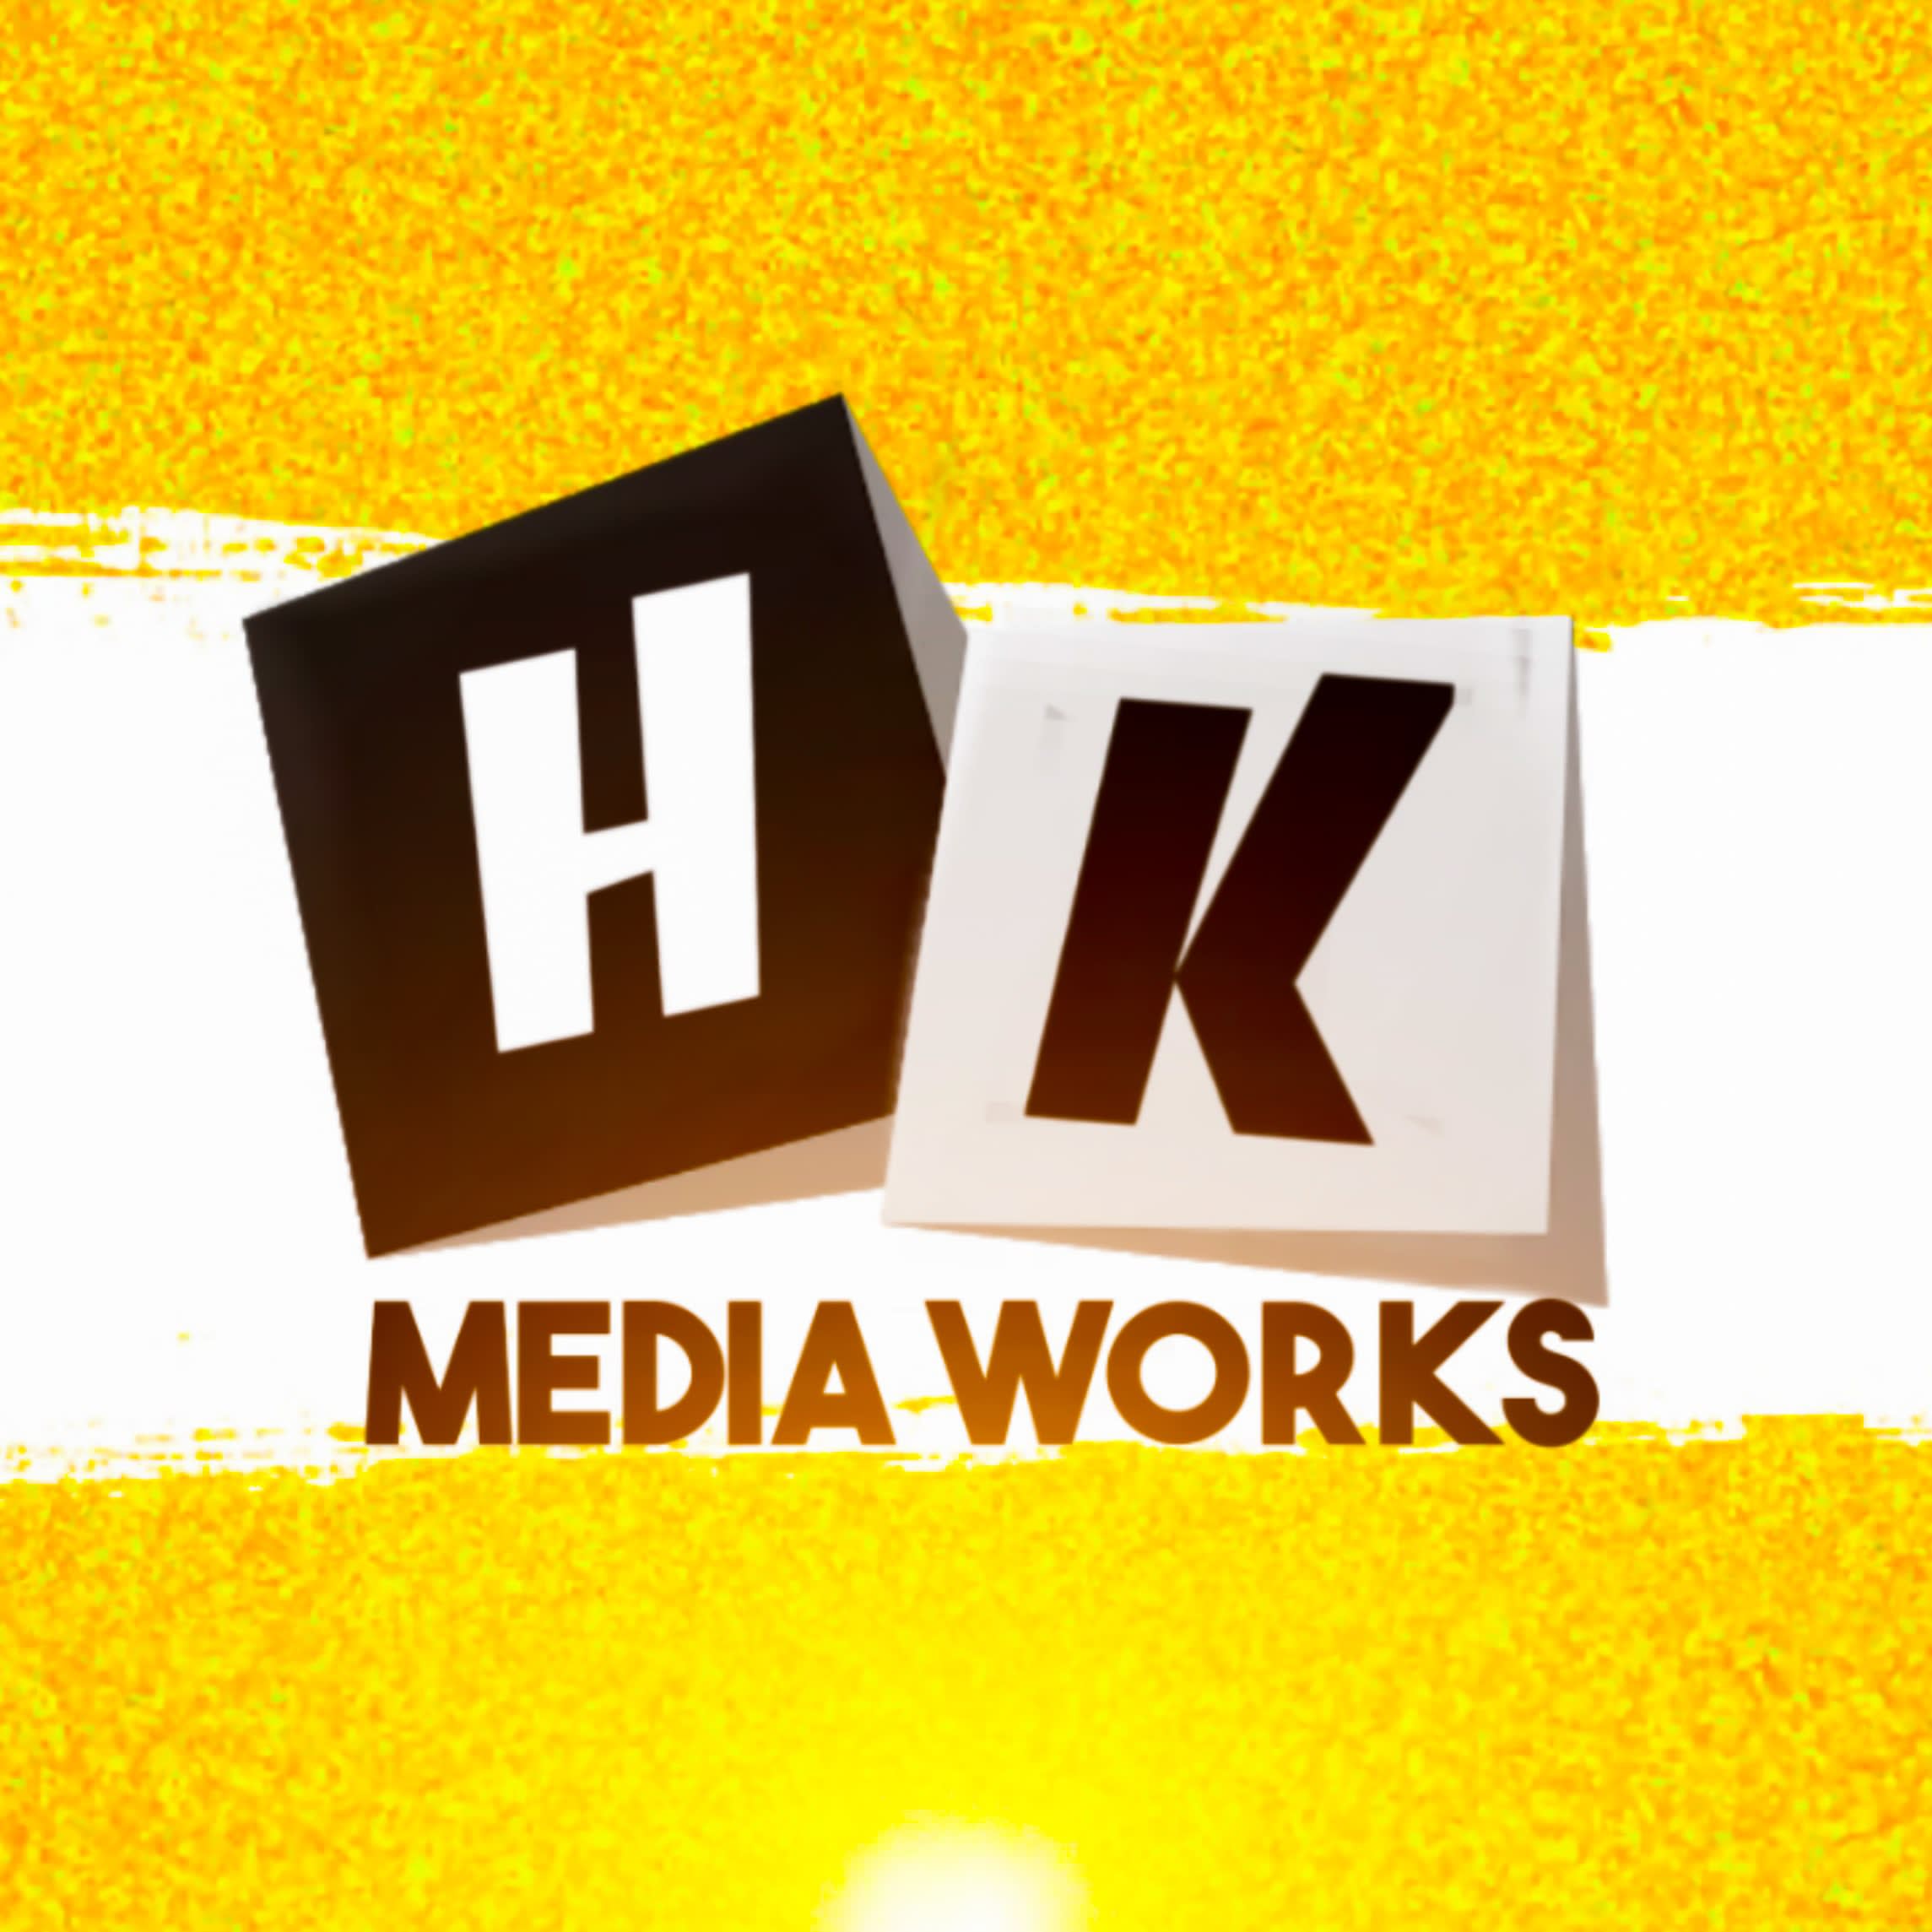 HK Media Works